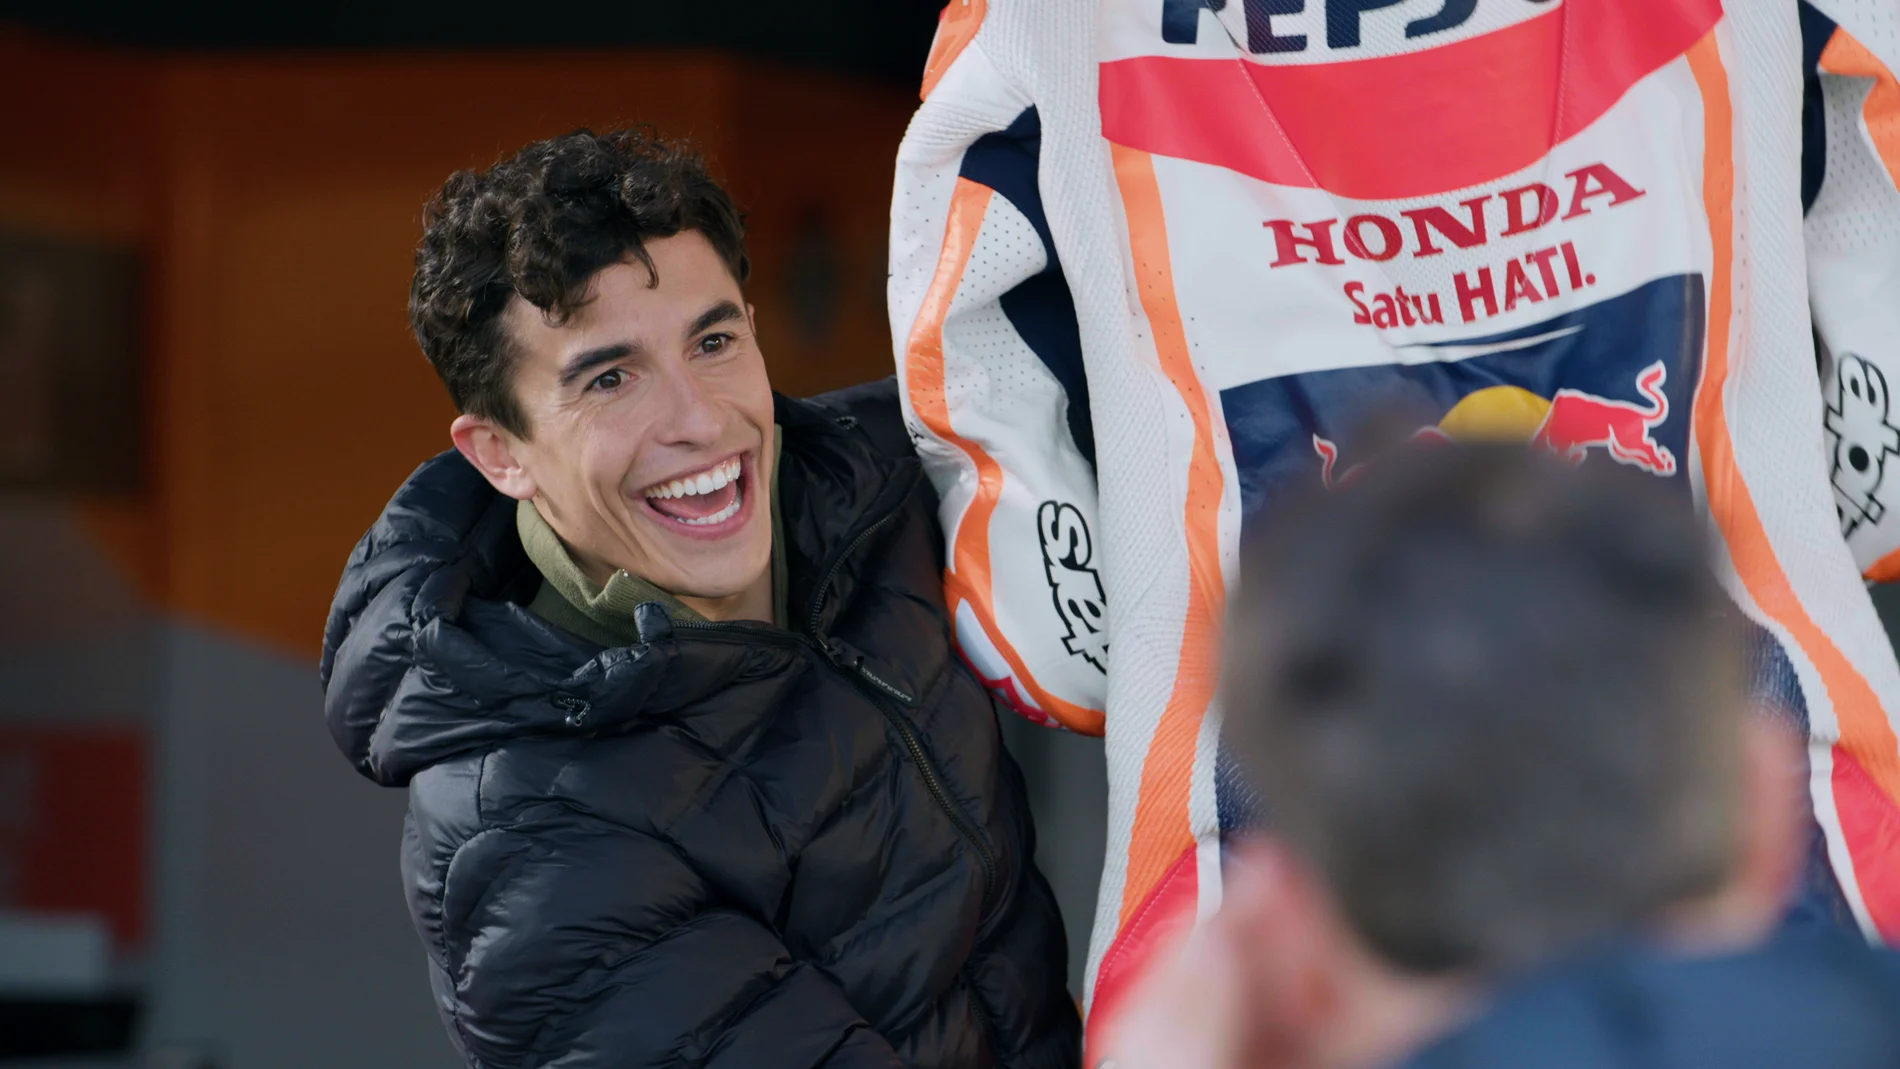 Joaquín descubre su mono de piloto de MotoGP: “Me voy a tirar como supermán”